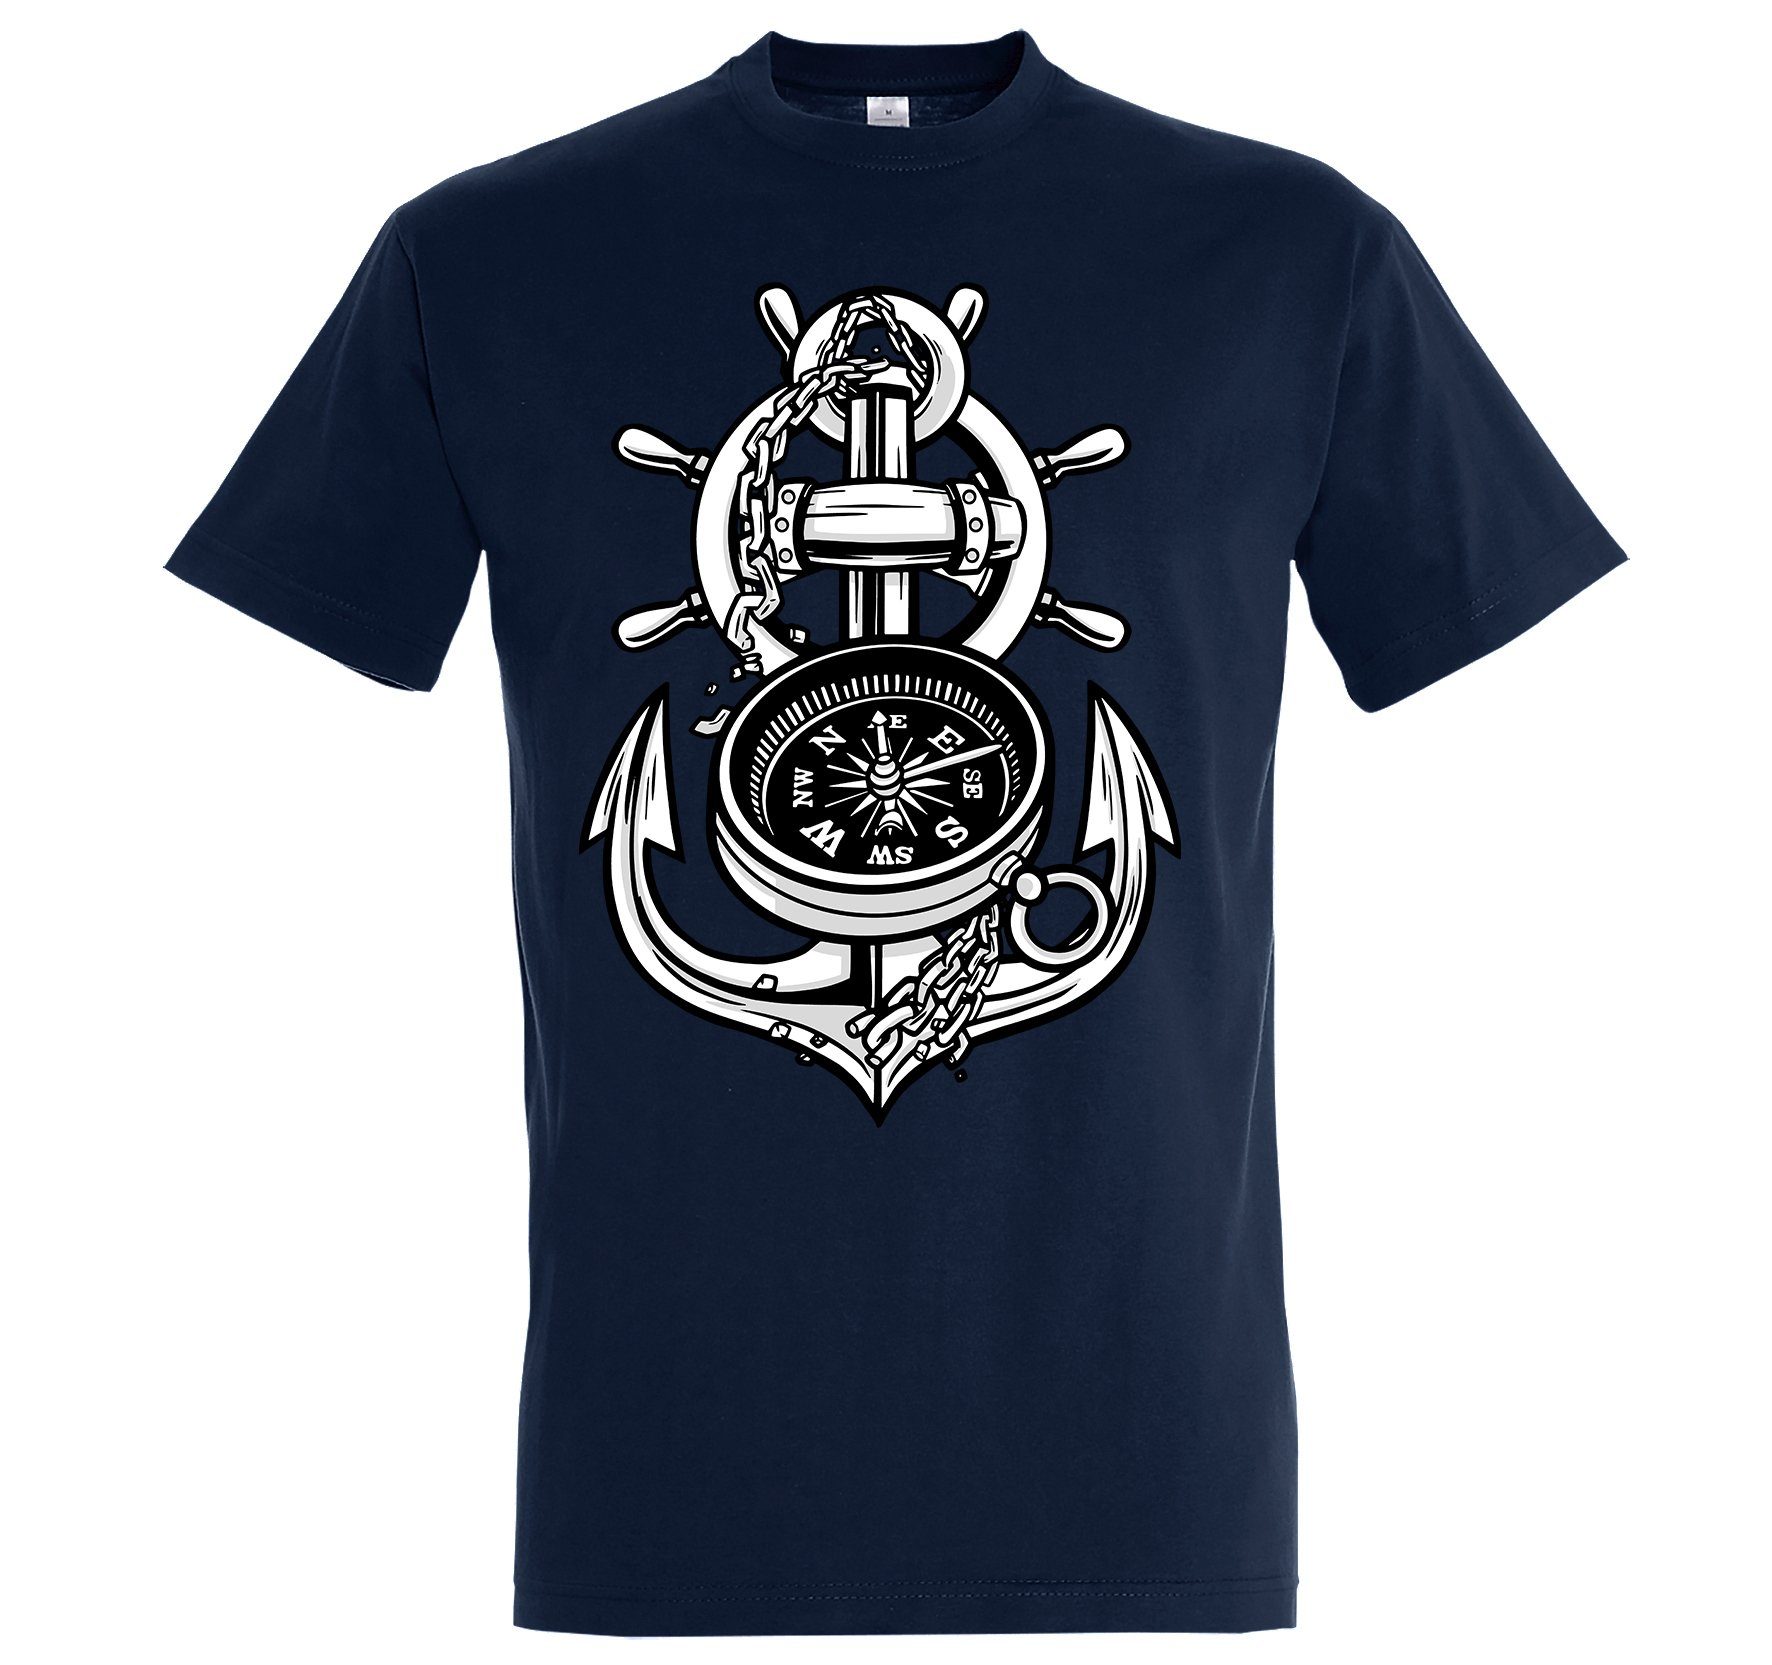 mit Designz Anker Youth Shirt trendigem Herren T-Shirt Kompass Navyblau Frontprint